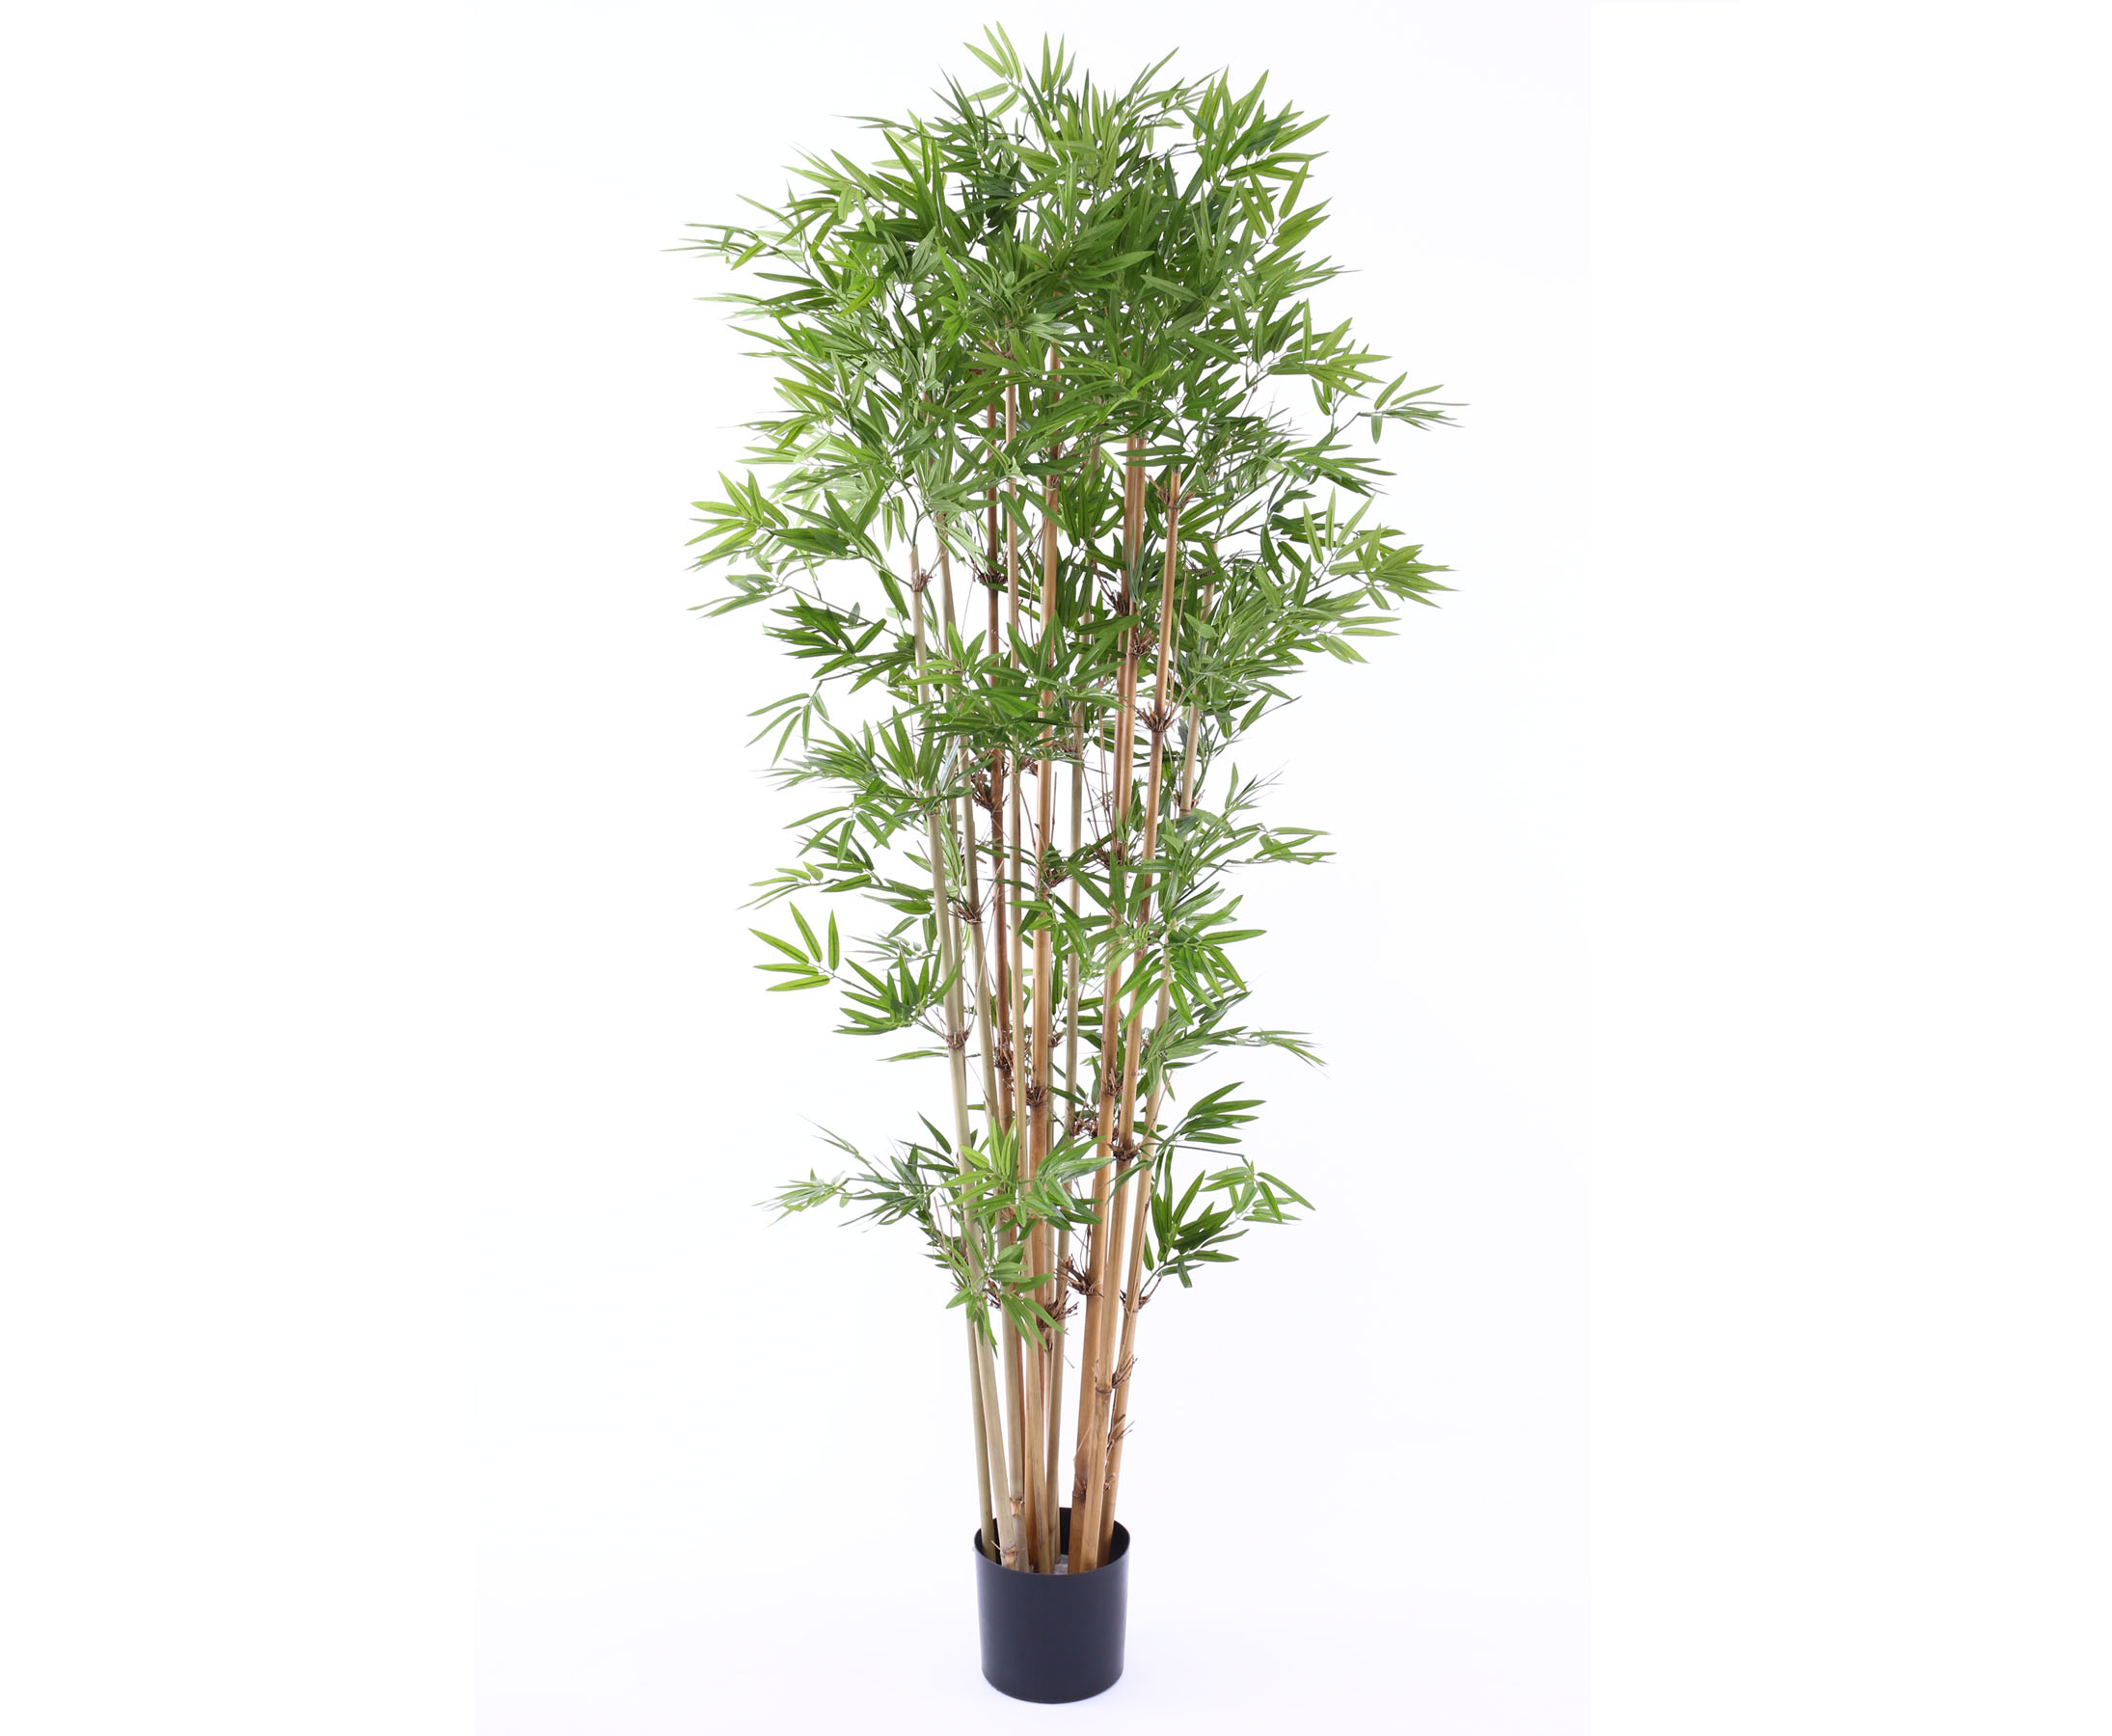 Hochwertigen Kunstbaum Bambus mit 180cm hier bestellen